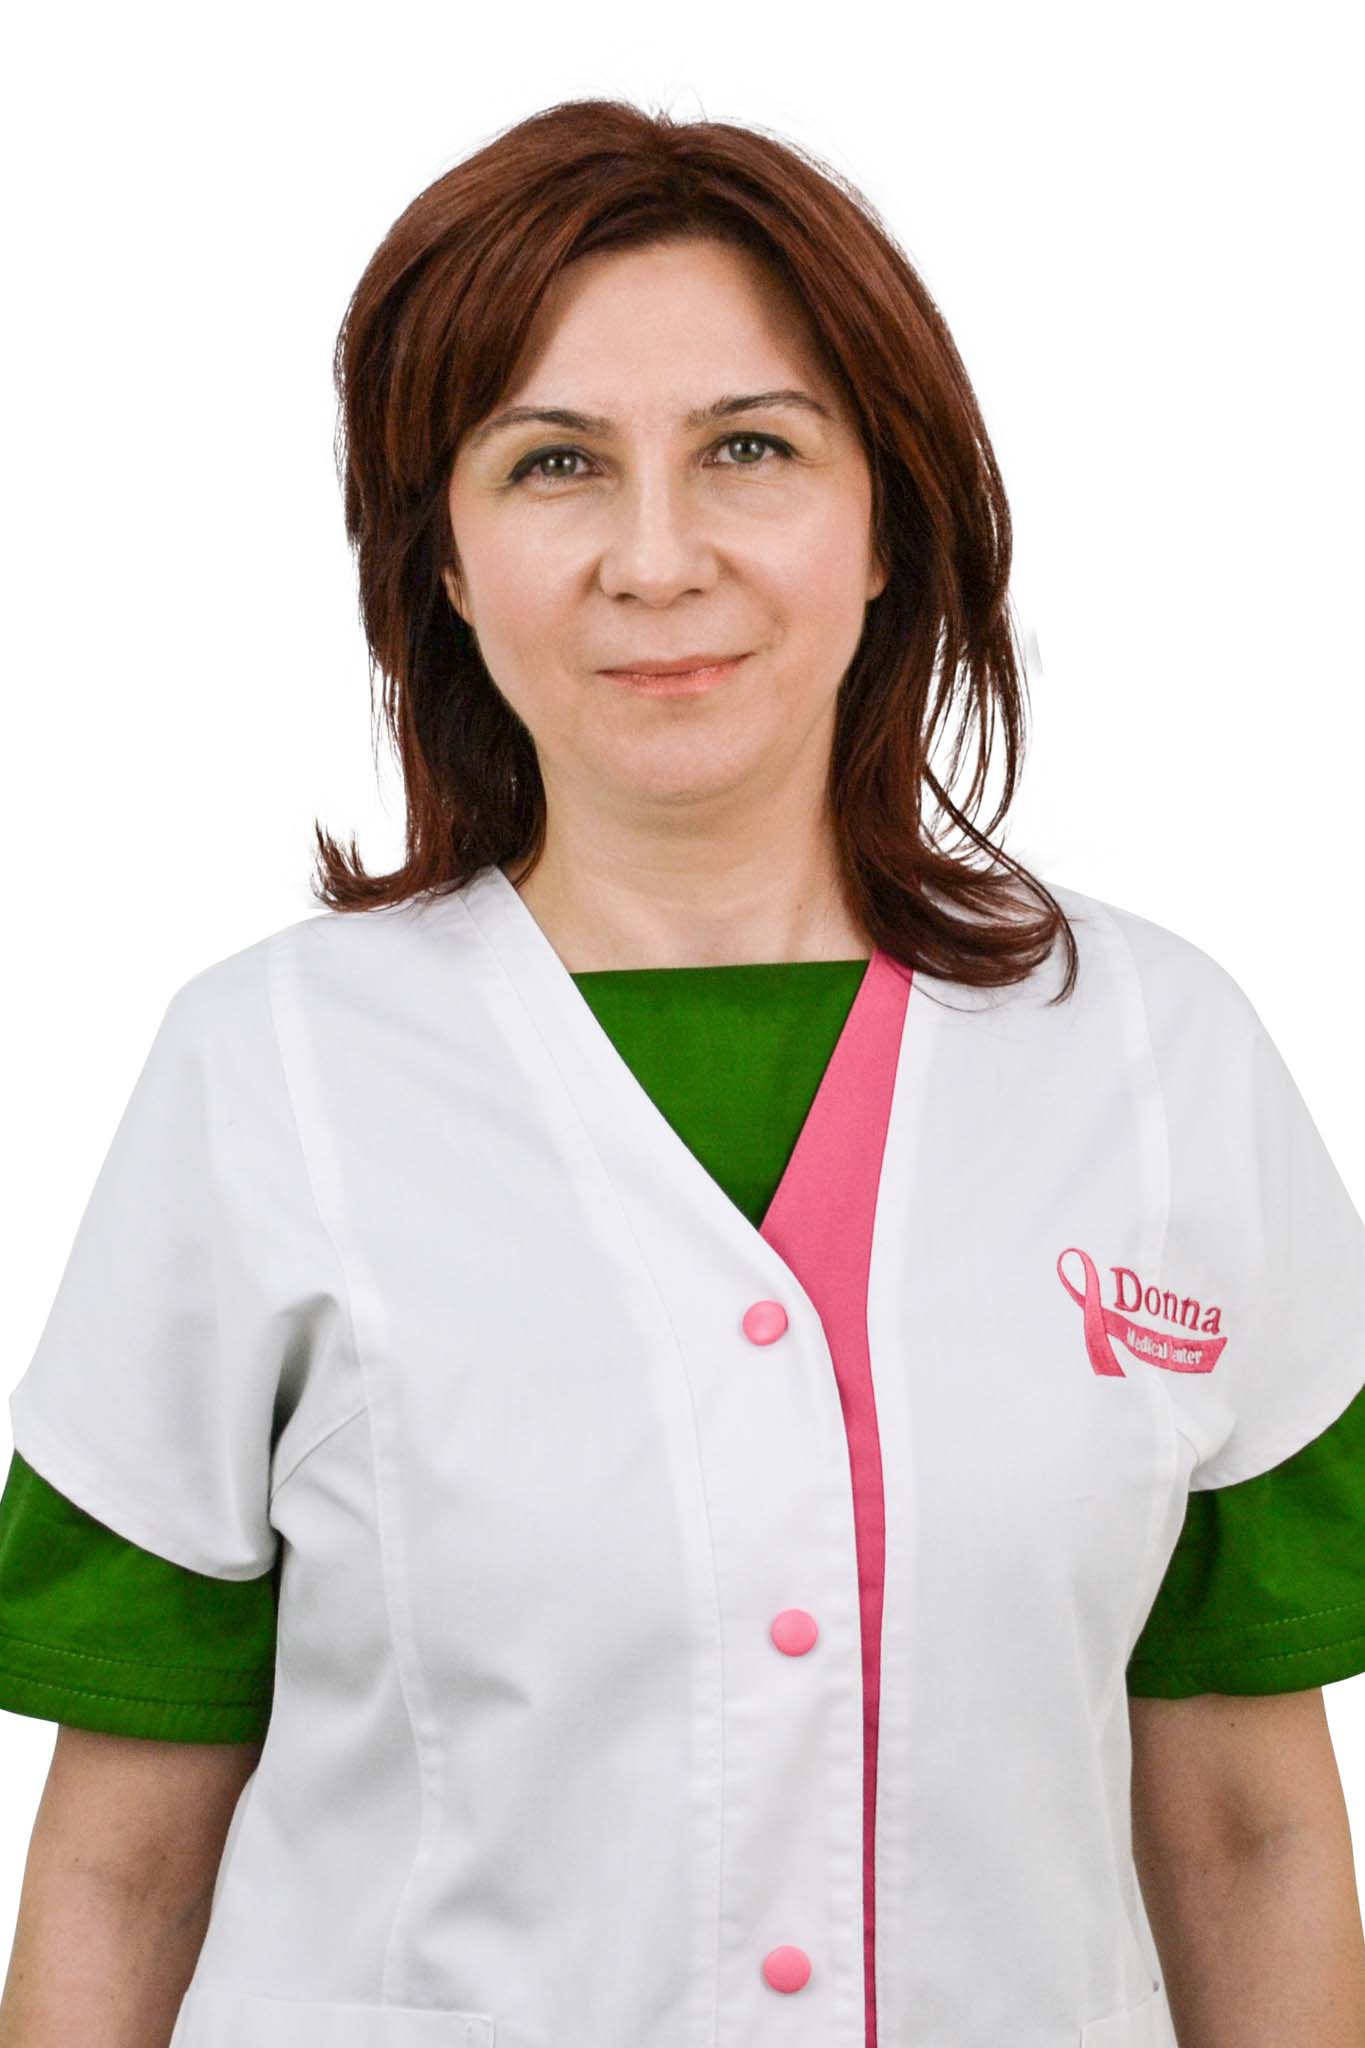 Dr. Nicole Cuturela